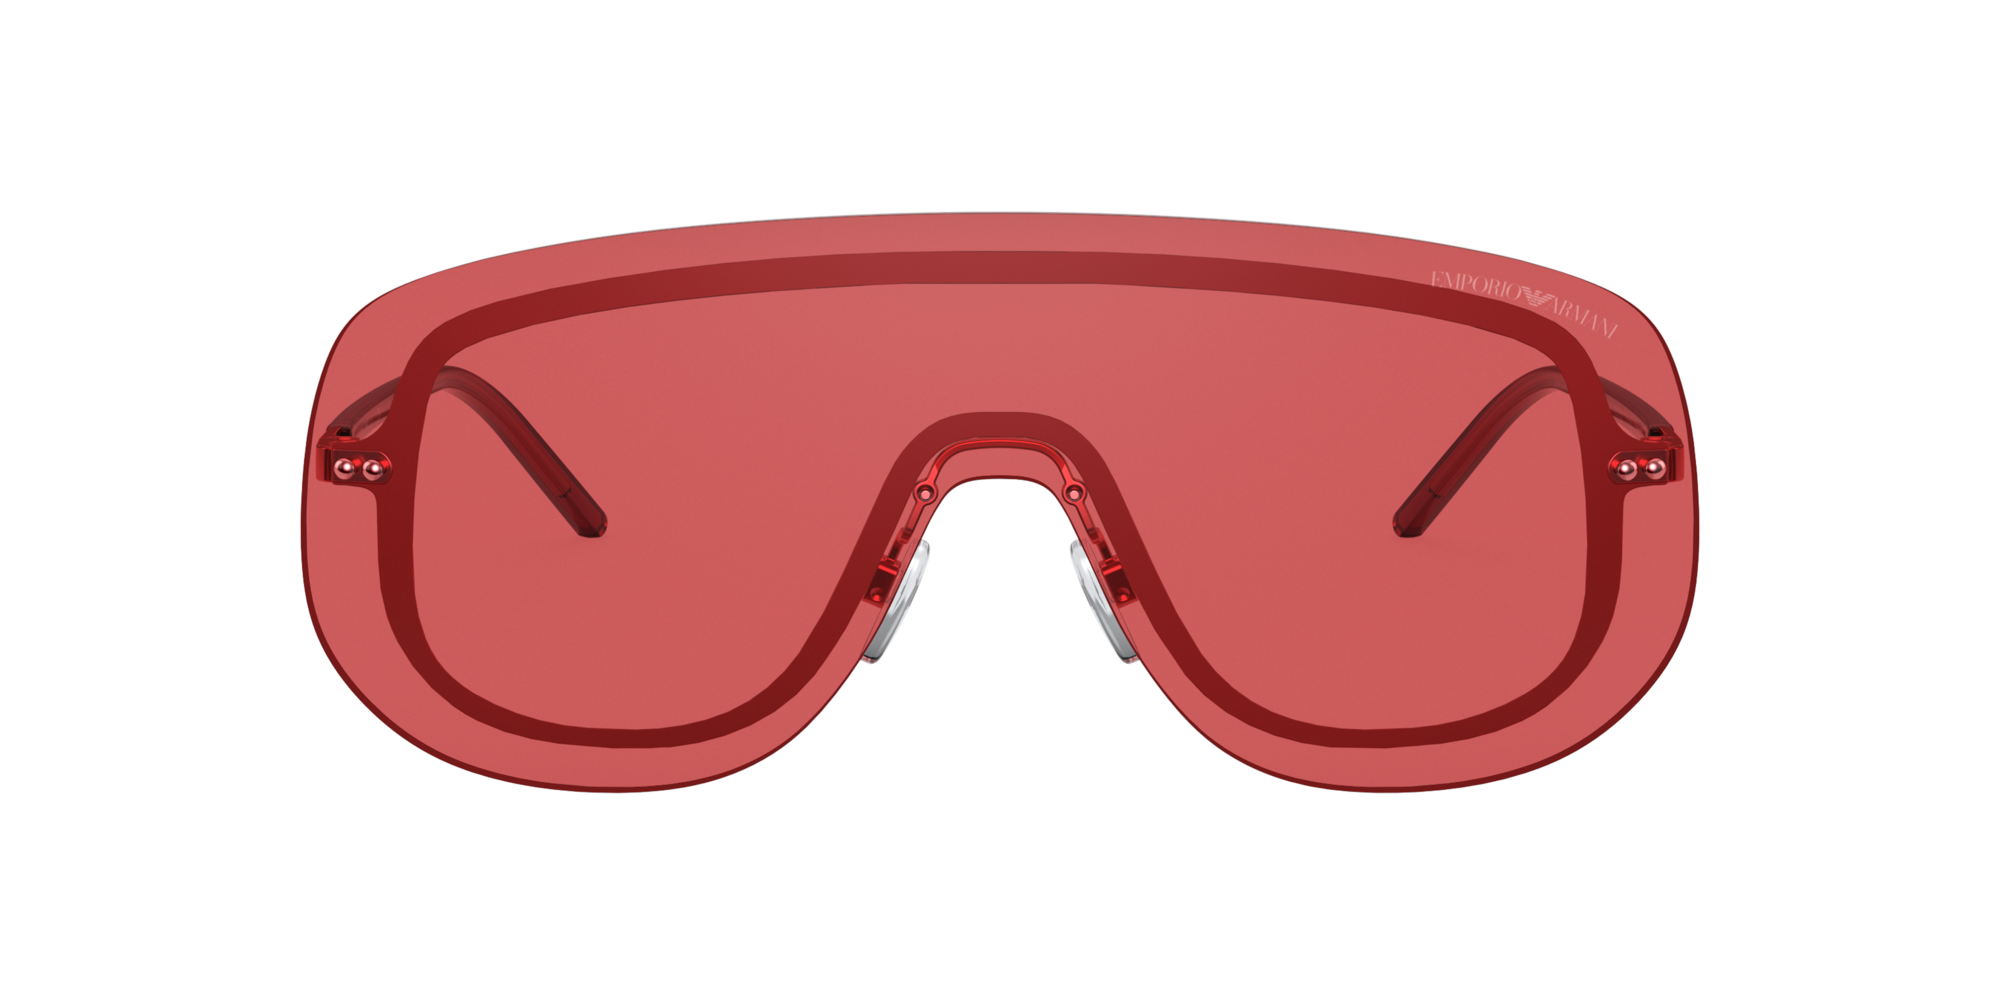 armani red sunglasses